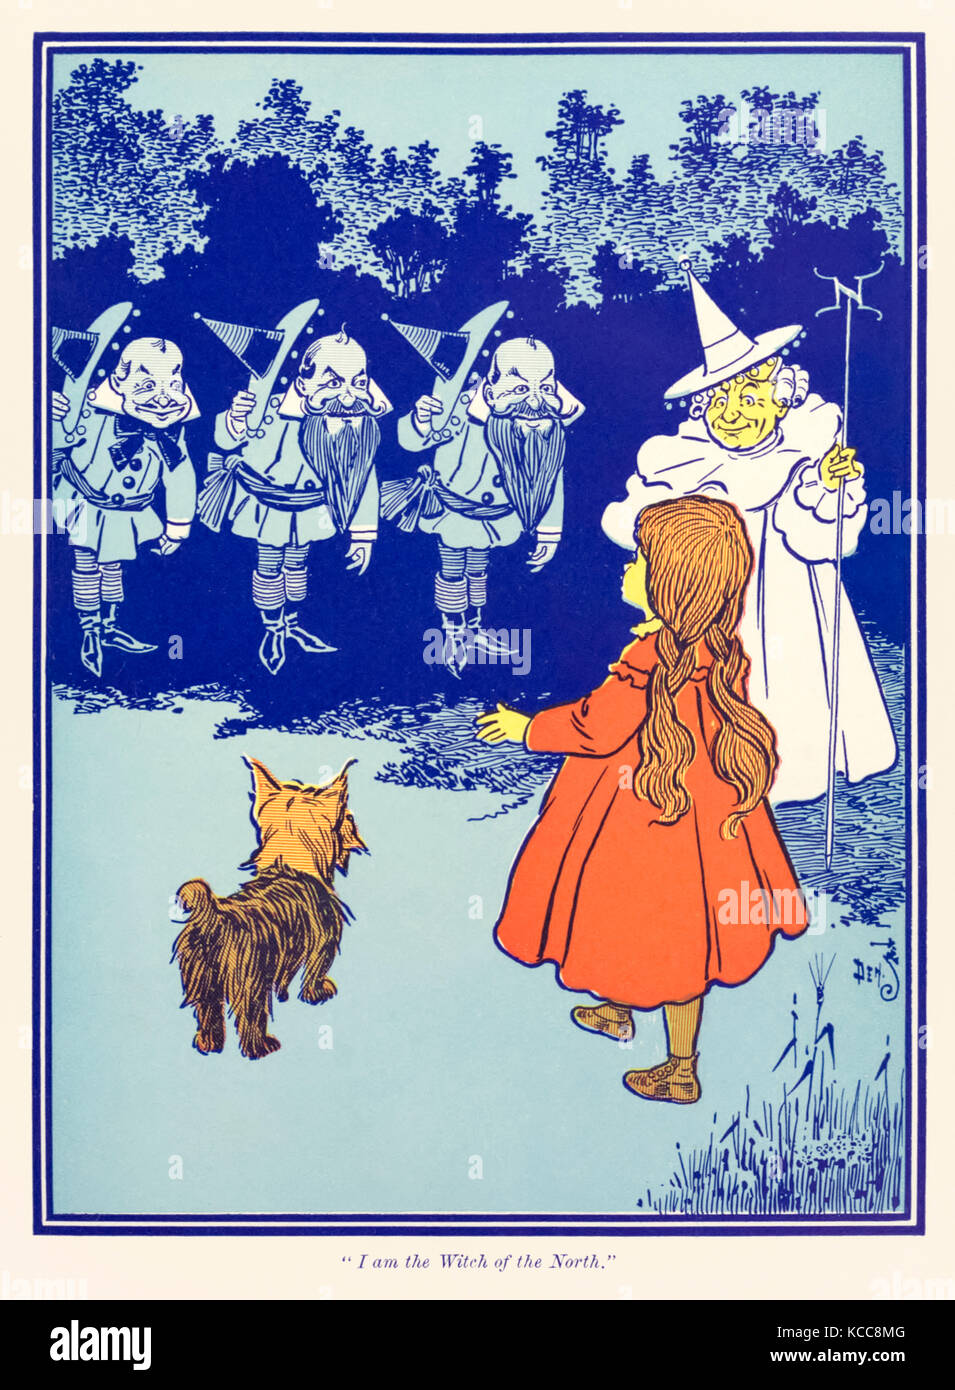 "Je suis la sorcière du Nord" à partir de 'Le Wonderful Wizard of Oz' par L. Frank Baum (1856-1919) avec des photos de W. W. Denslow (1856-1915). Voir plus d'informations ci-dessous. Banque D'Images